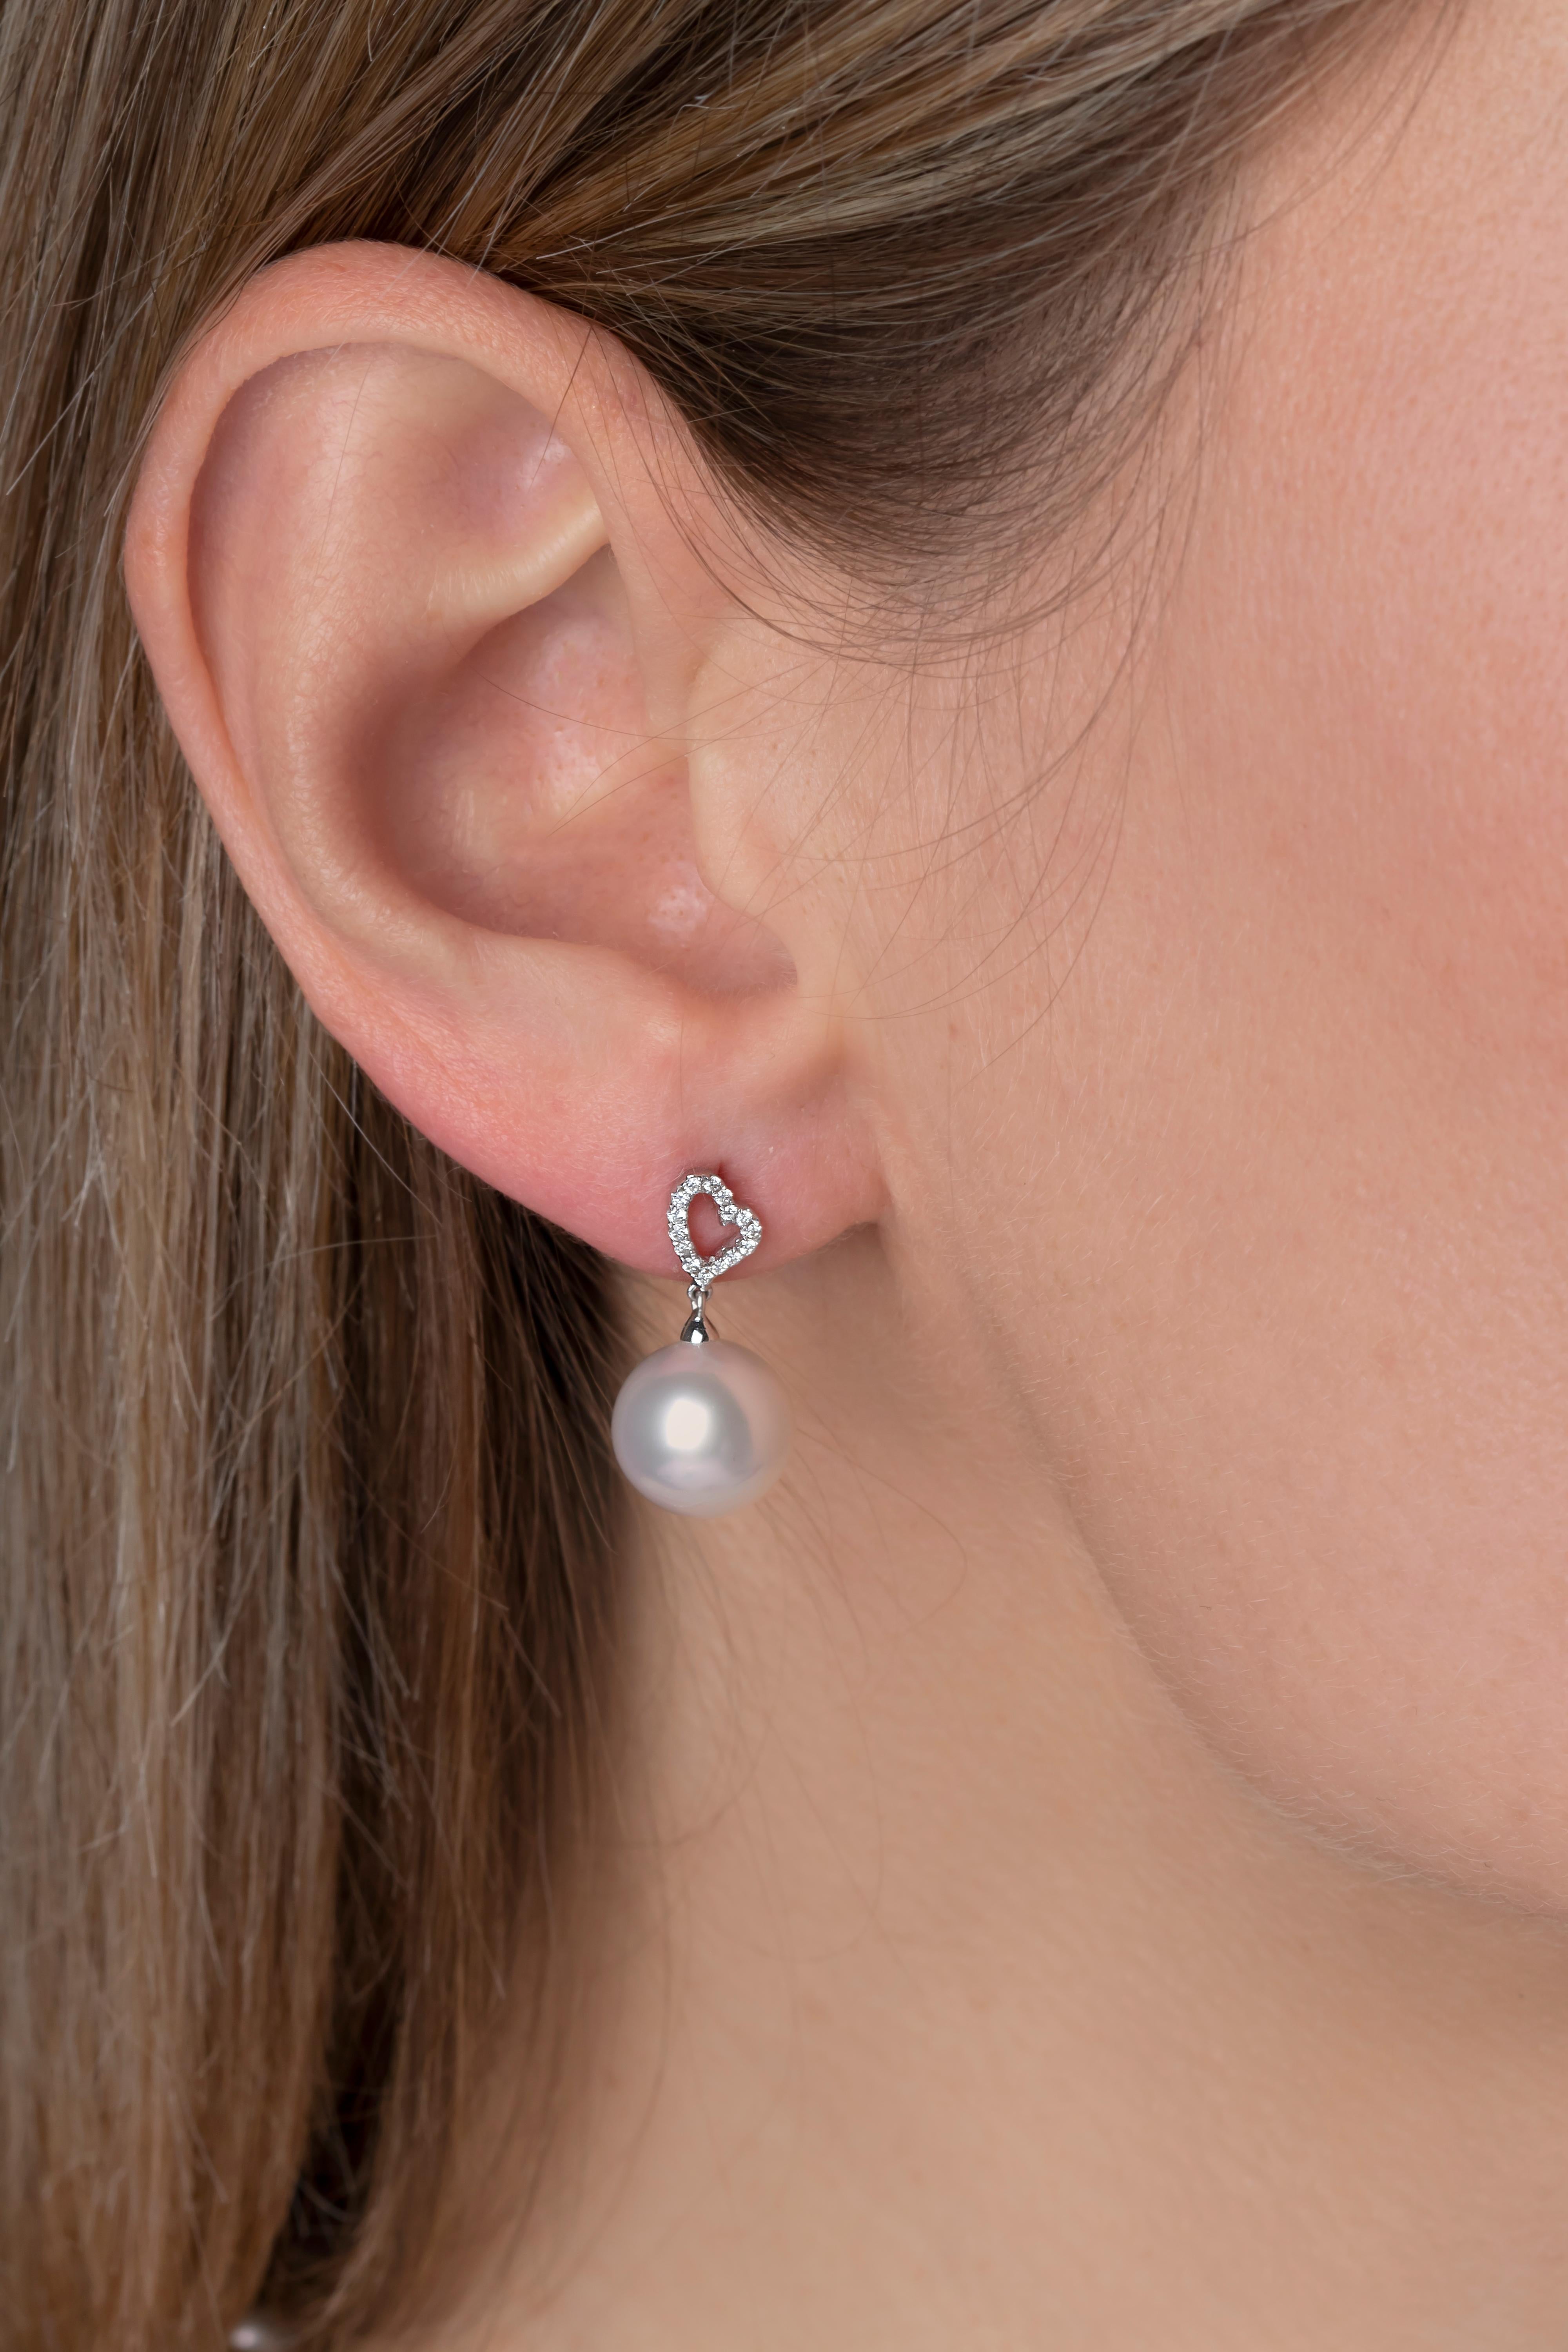 Diese filigranen Ohrringe von Yoko London zeigen glänzende Südseeperlen unter einem verspielten Diamantherzmotiv. Diese modernen und eleganten Ohrringe verleihen jedem Tragen einen Hauch von Raffinesse. Diese Ohrringe sind das perfekte Geschenk für